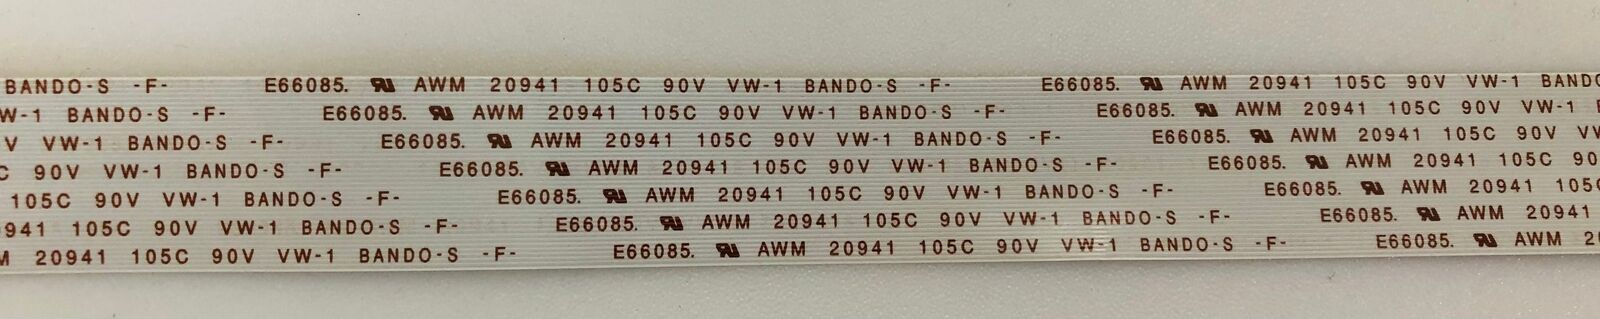 E66085 AWM 20941 105C 90V VW-1 BANDO-S F A001219-B CABLE - PIONEER PDP-435PE